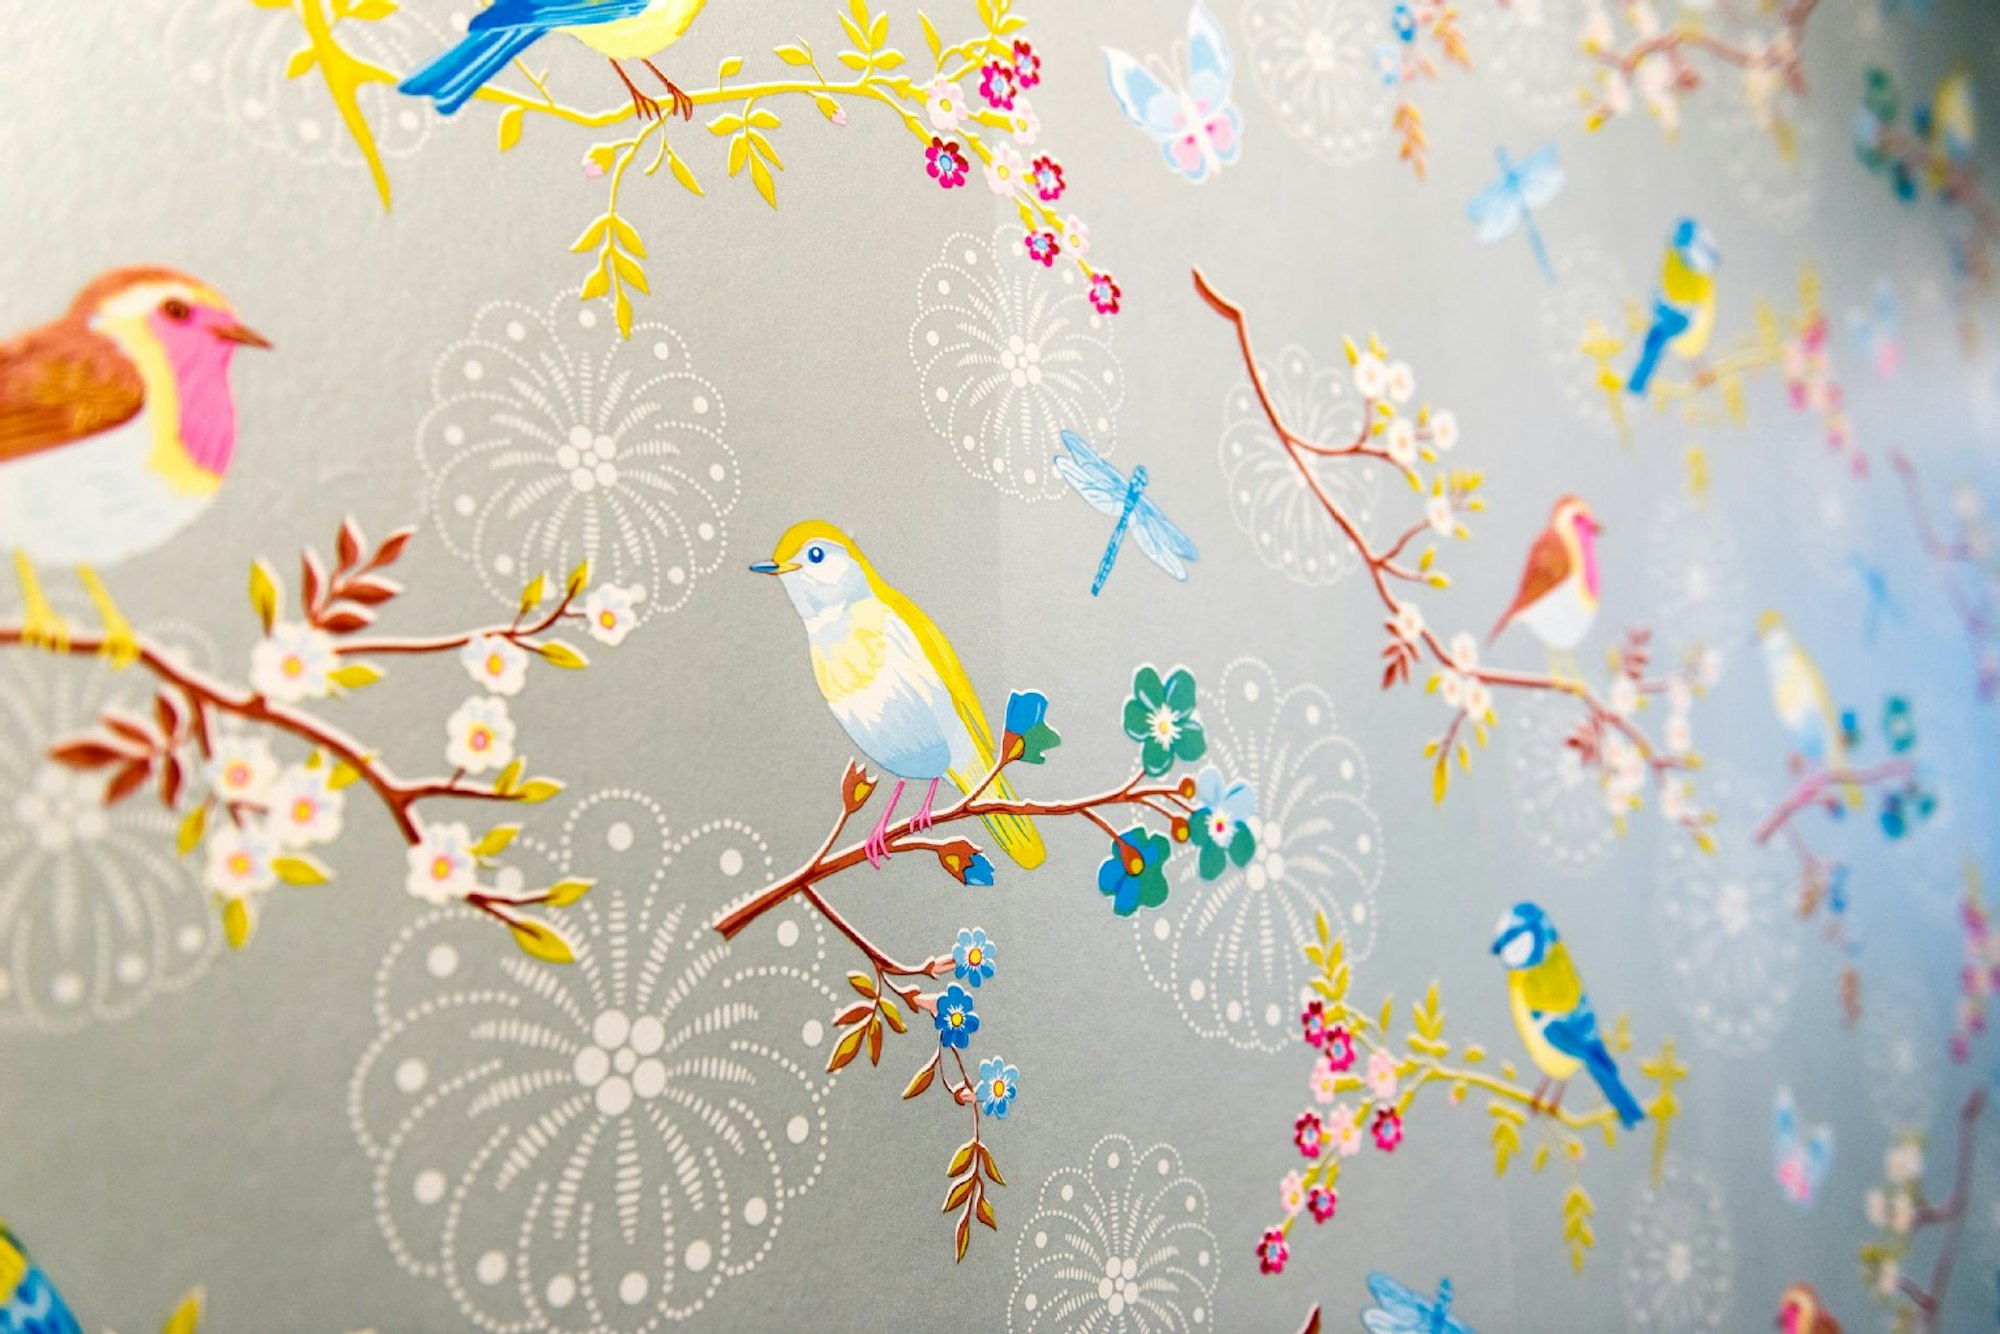 Vogelmotive kehren auf Tapete und Porzellan immer wieder.